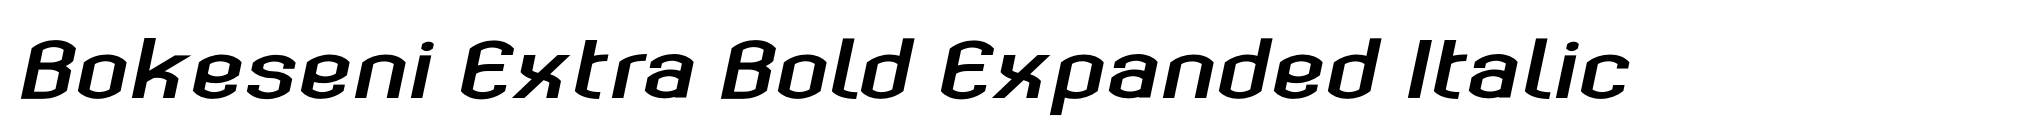 Bokeseni Extra Bold Expanded Italic image